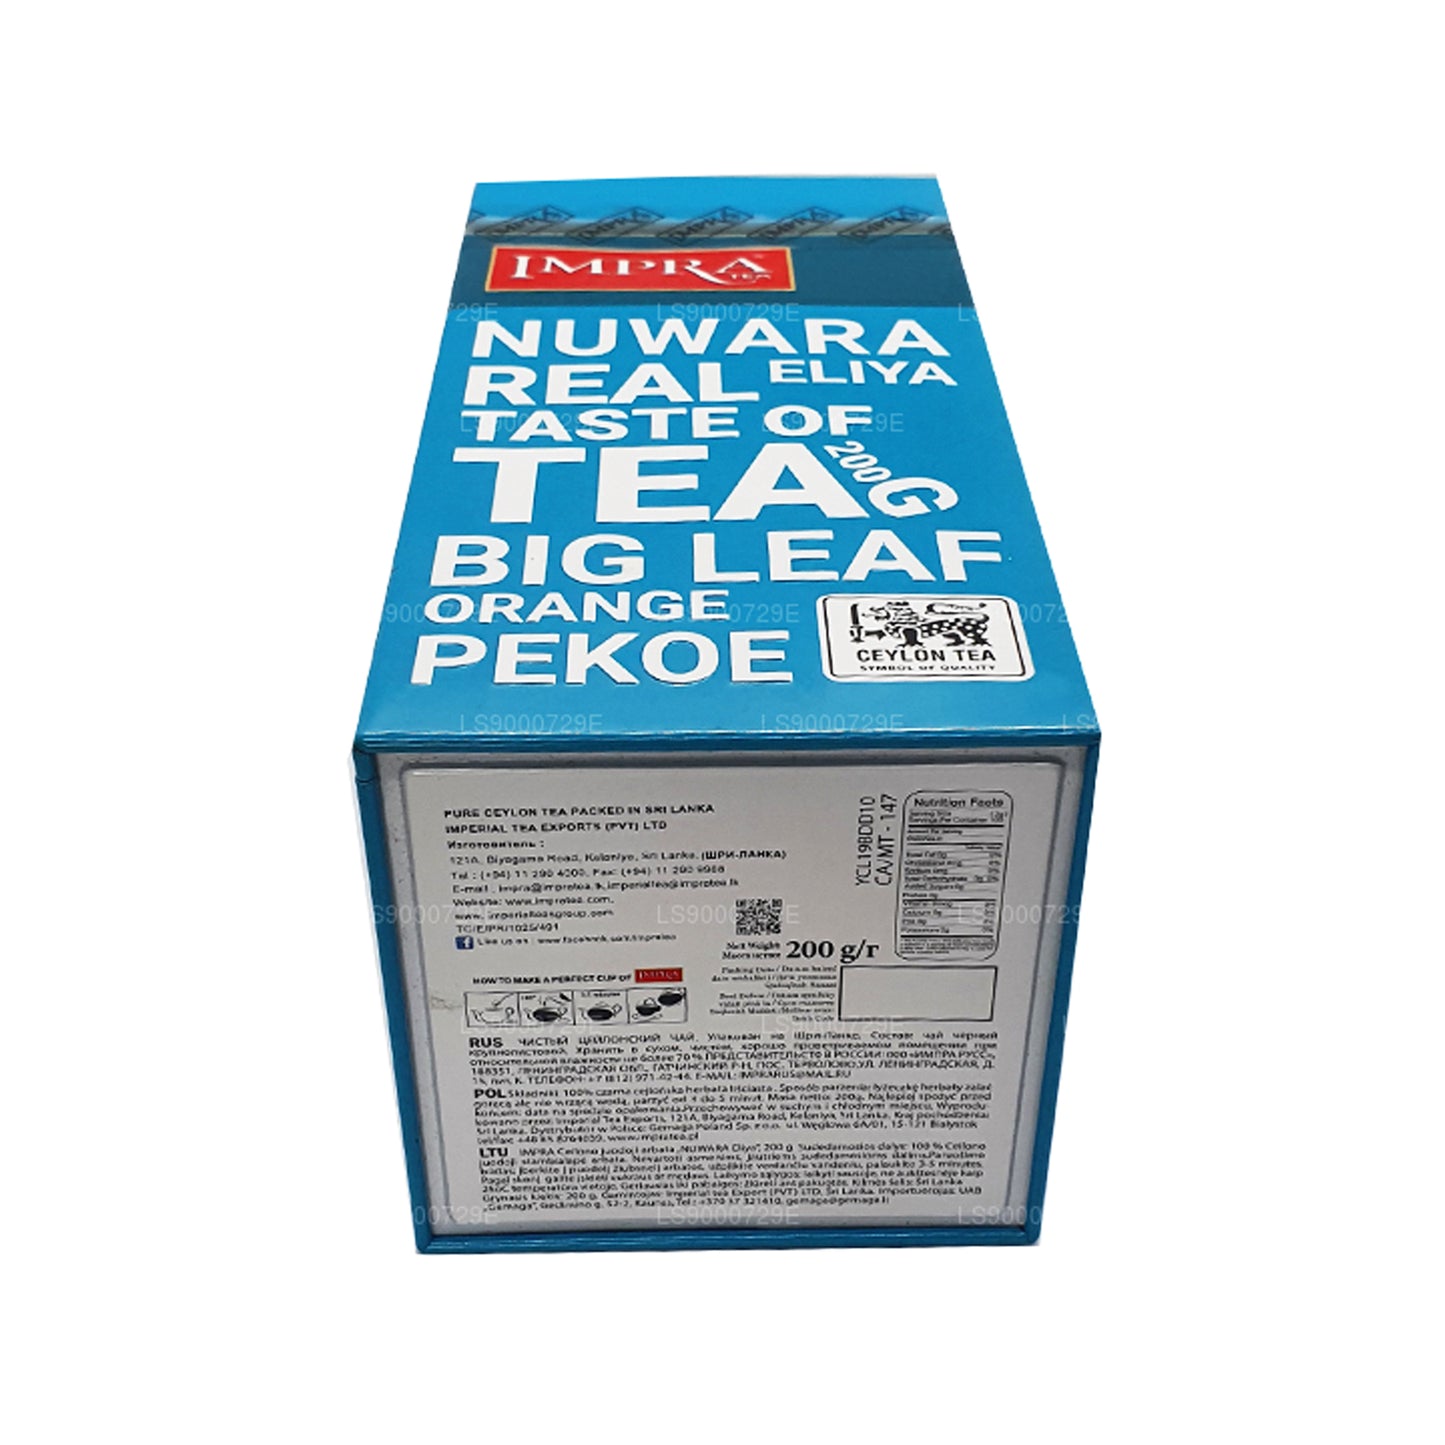 Impra Nuwara Eliya Big Leaf Fleischdose (200 g)